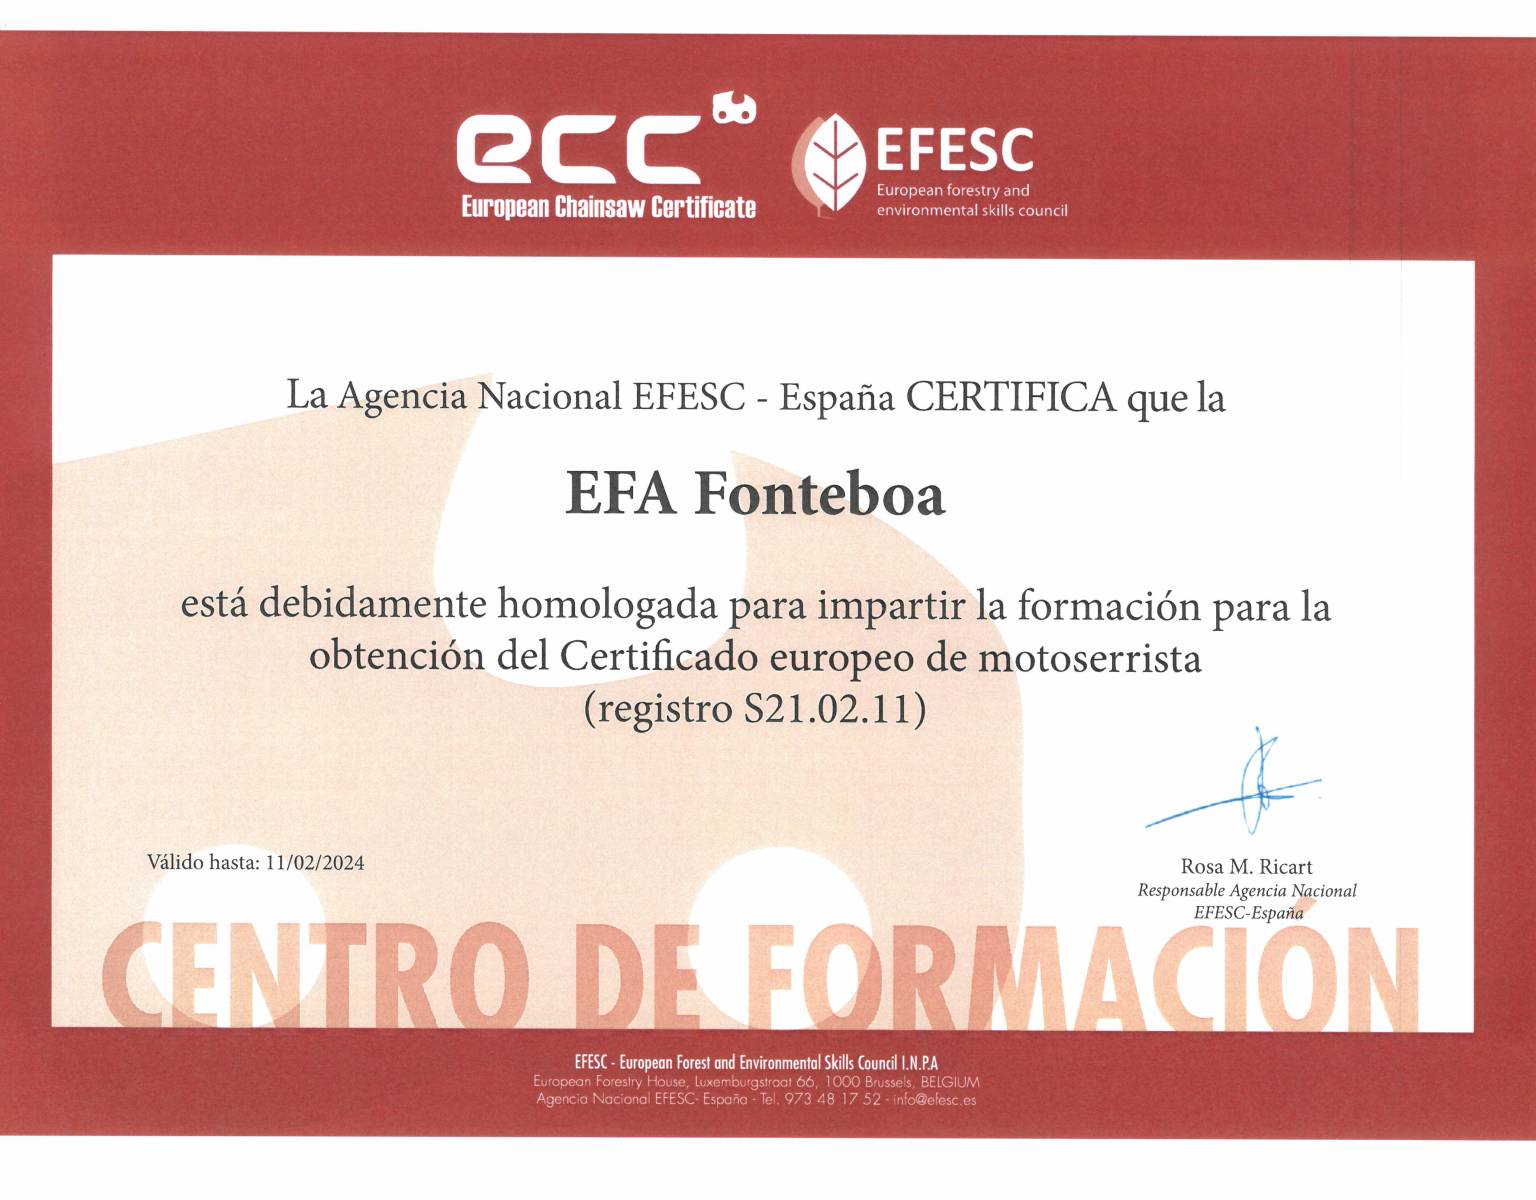 ECC – European Chainsaw Certificate